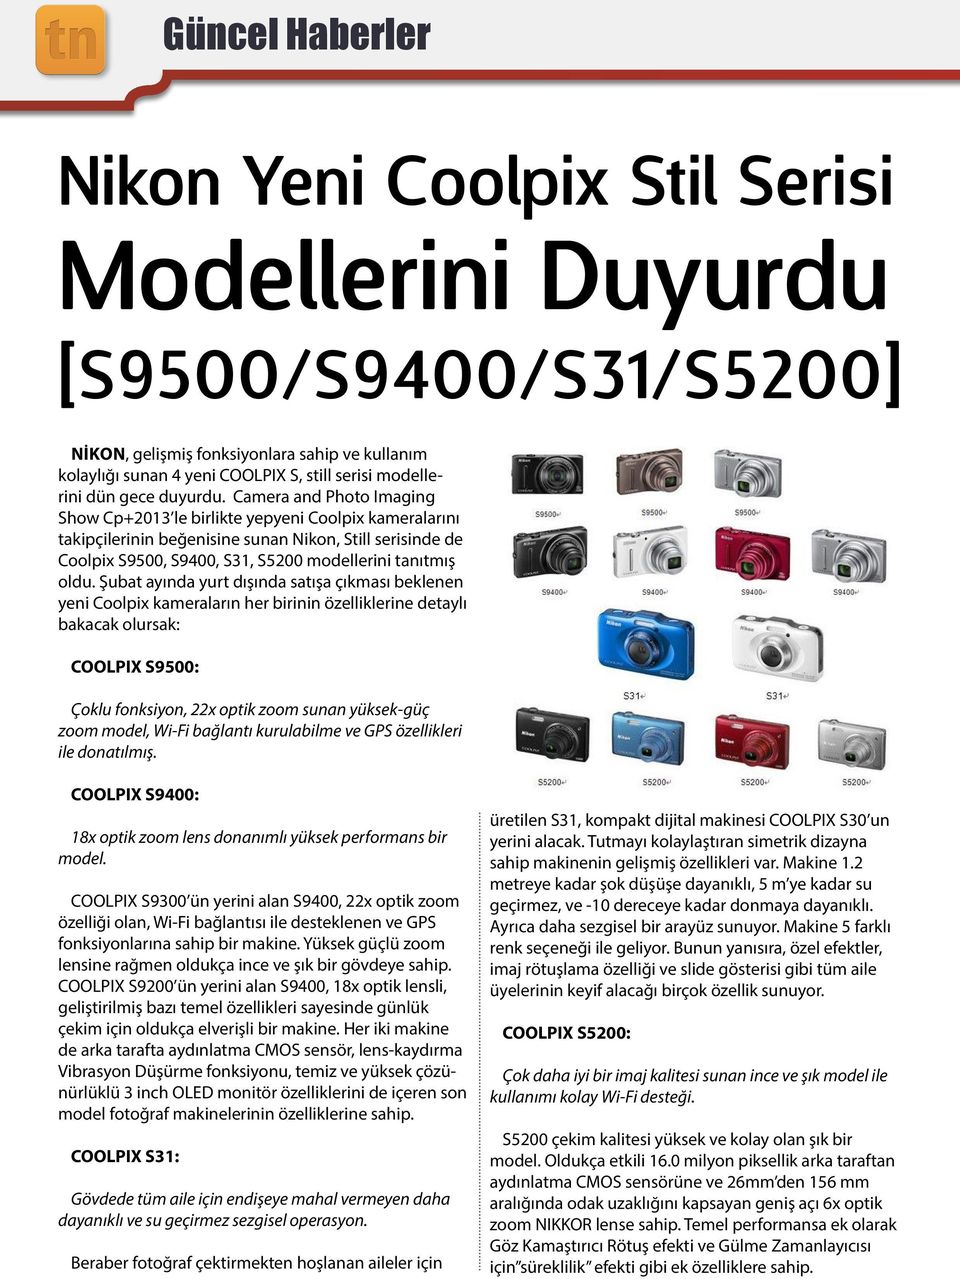 Camera and Photo Imaging Show Cp+2013 le birlikte yepyeni Coolpix kameralarını takipçilerinin beğenisine sunan Nikon, Still serisinde de Coolpix S9500, S9400, S31, S5200 modellerini tanıtmış oldu.